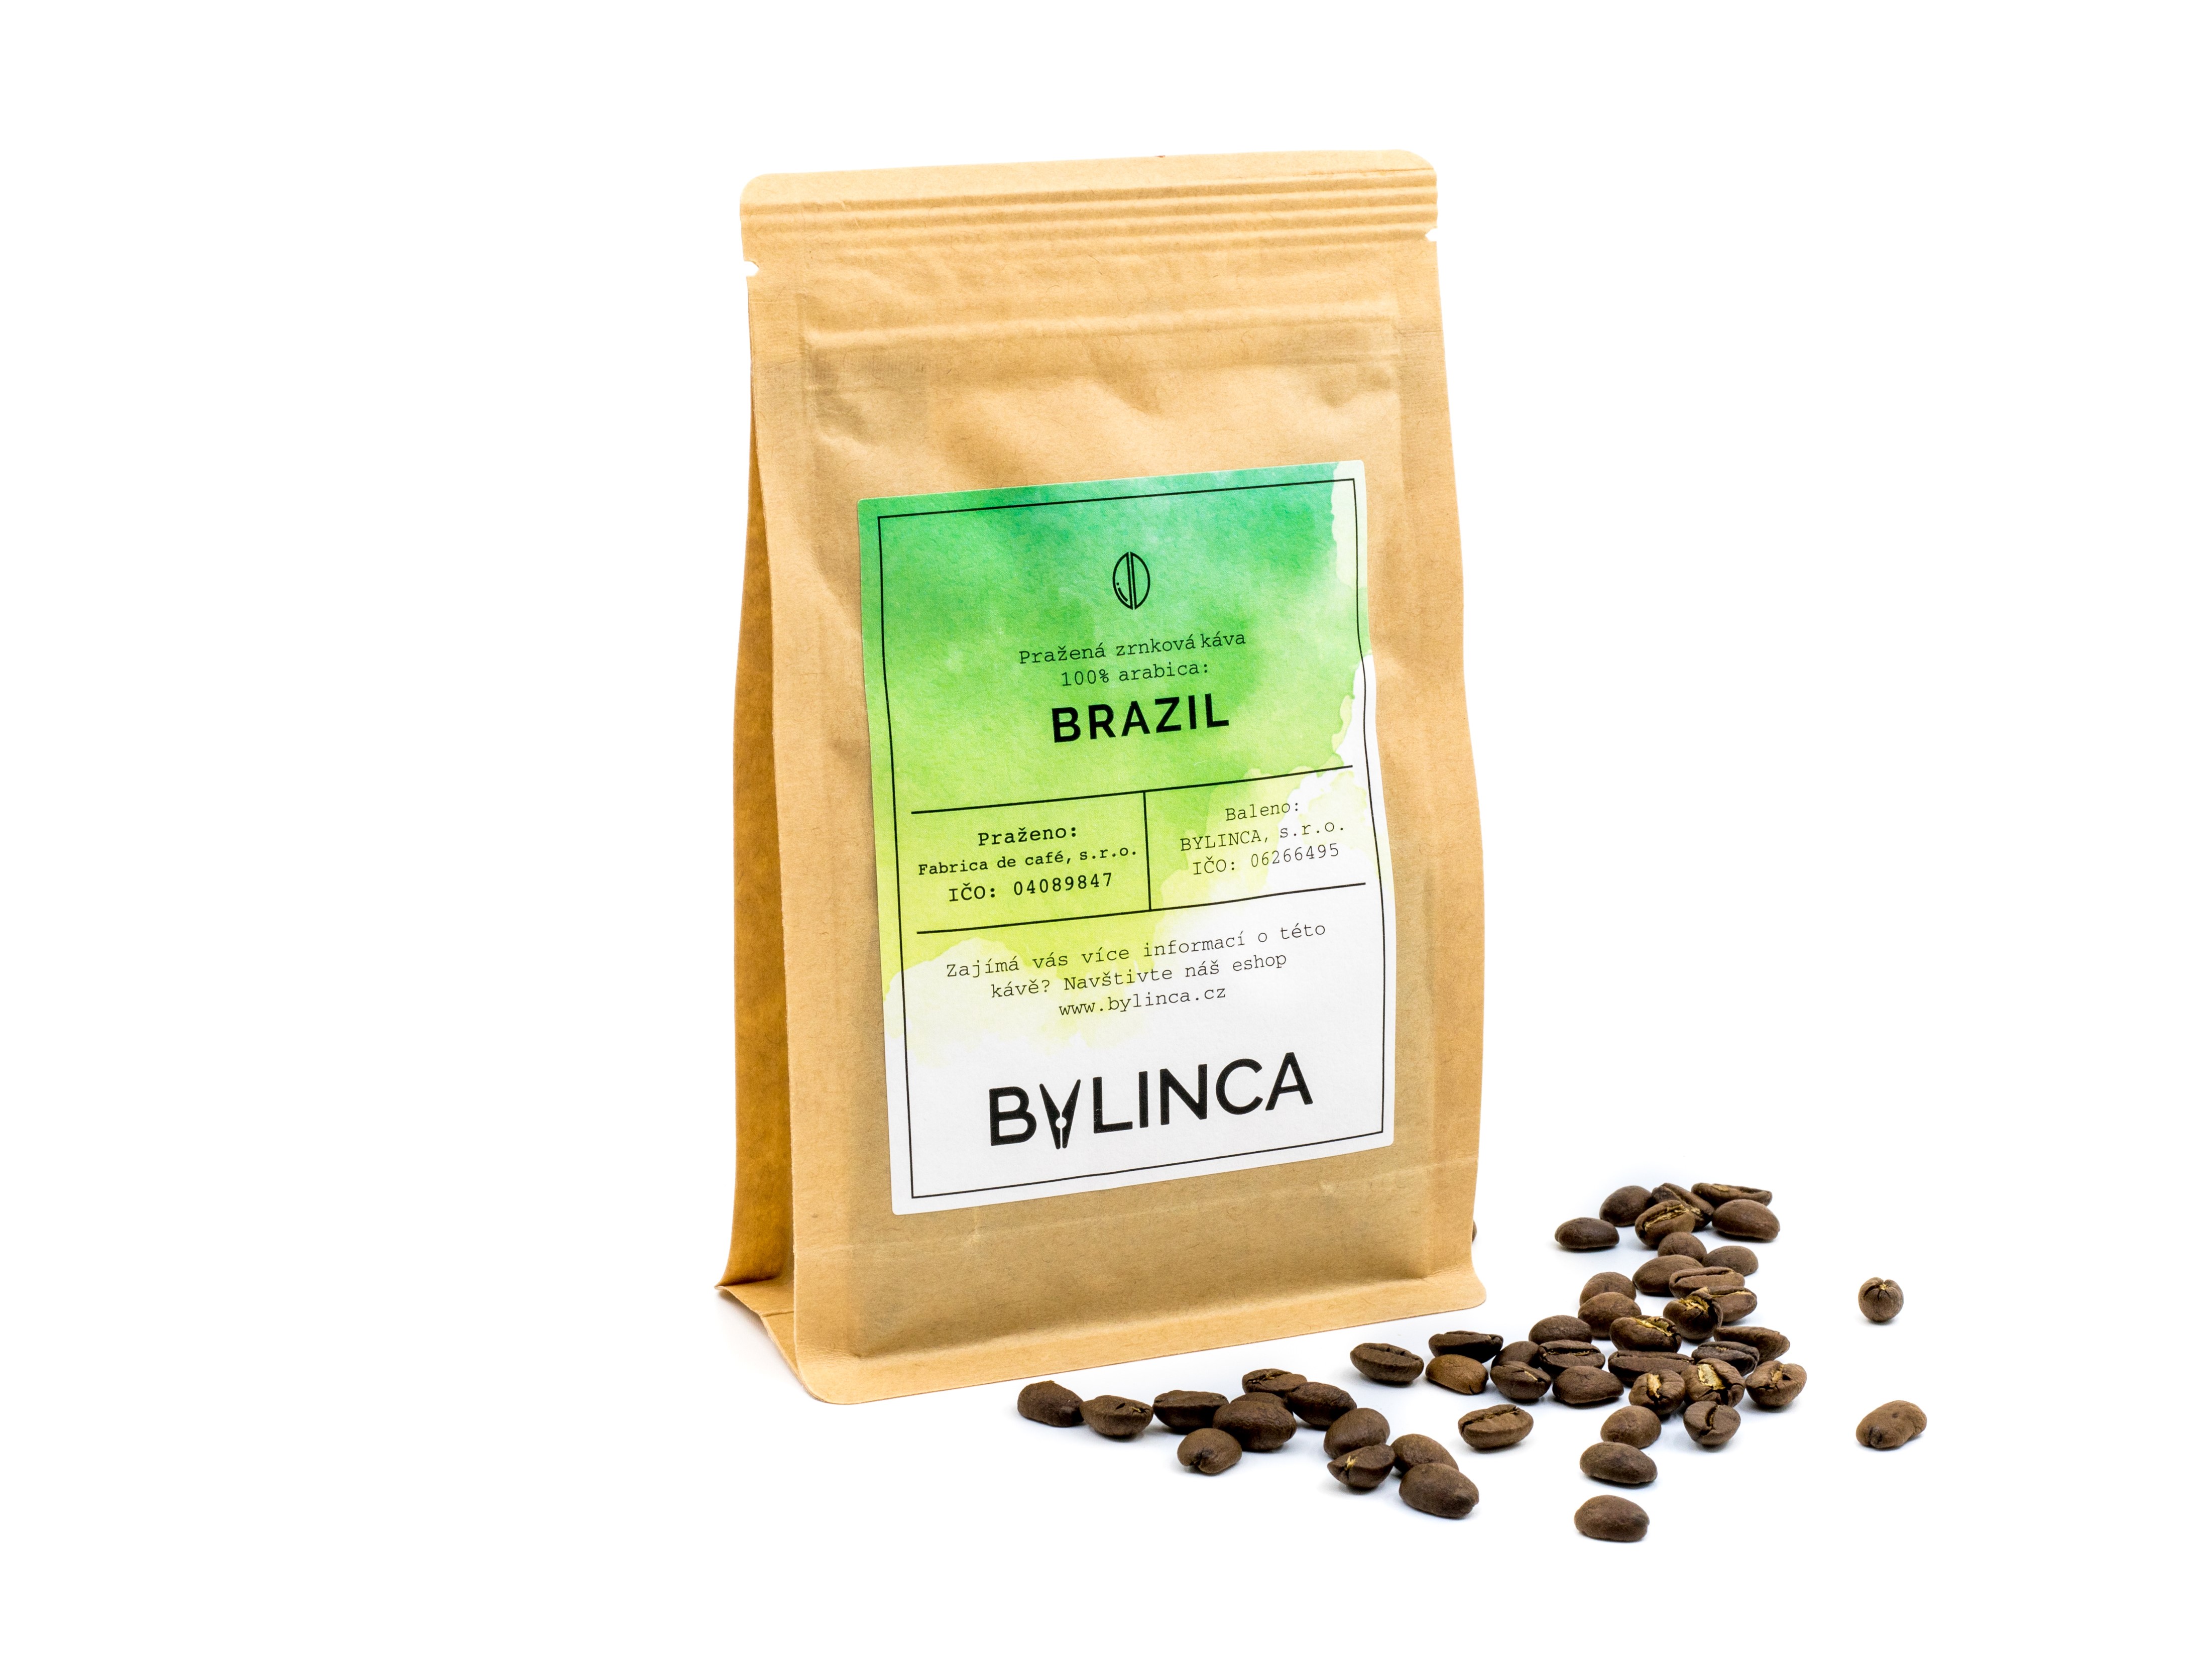 BYLINCA Zrnková káva: Brazil 100g, 250g, 500g, 1000g 1 ks: 100g